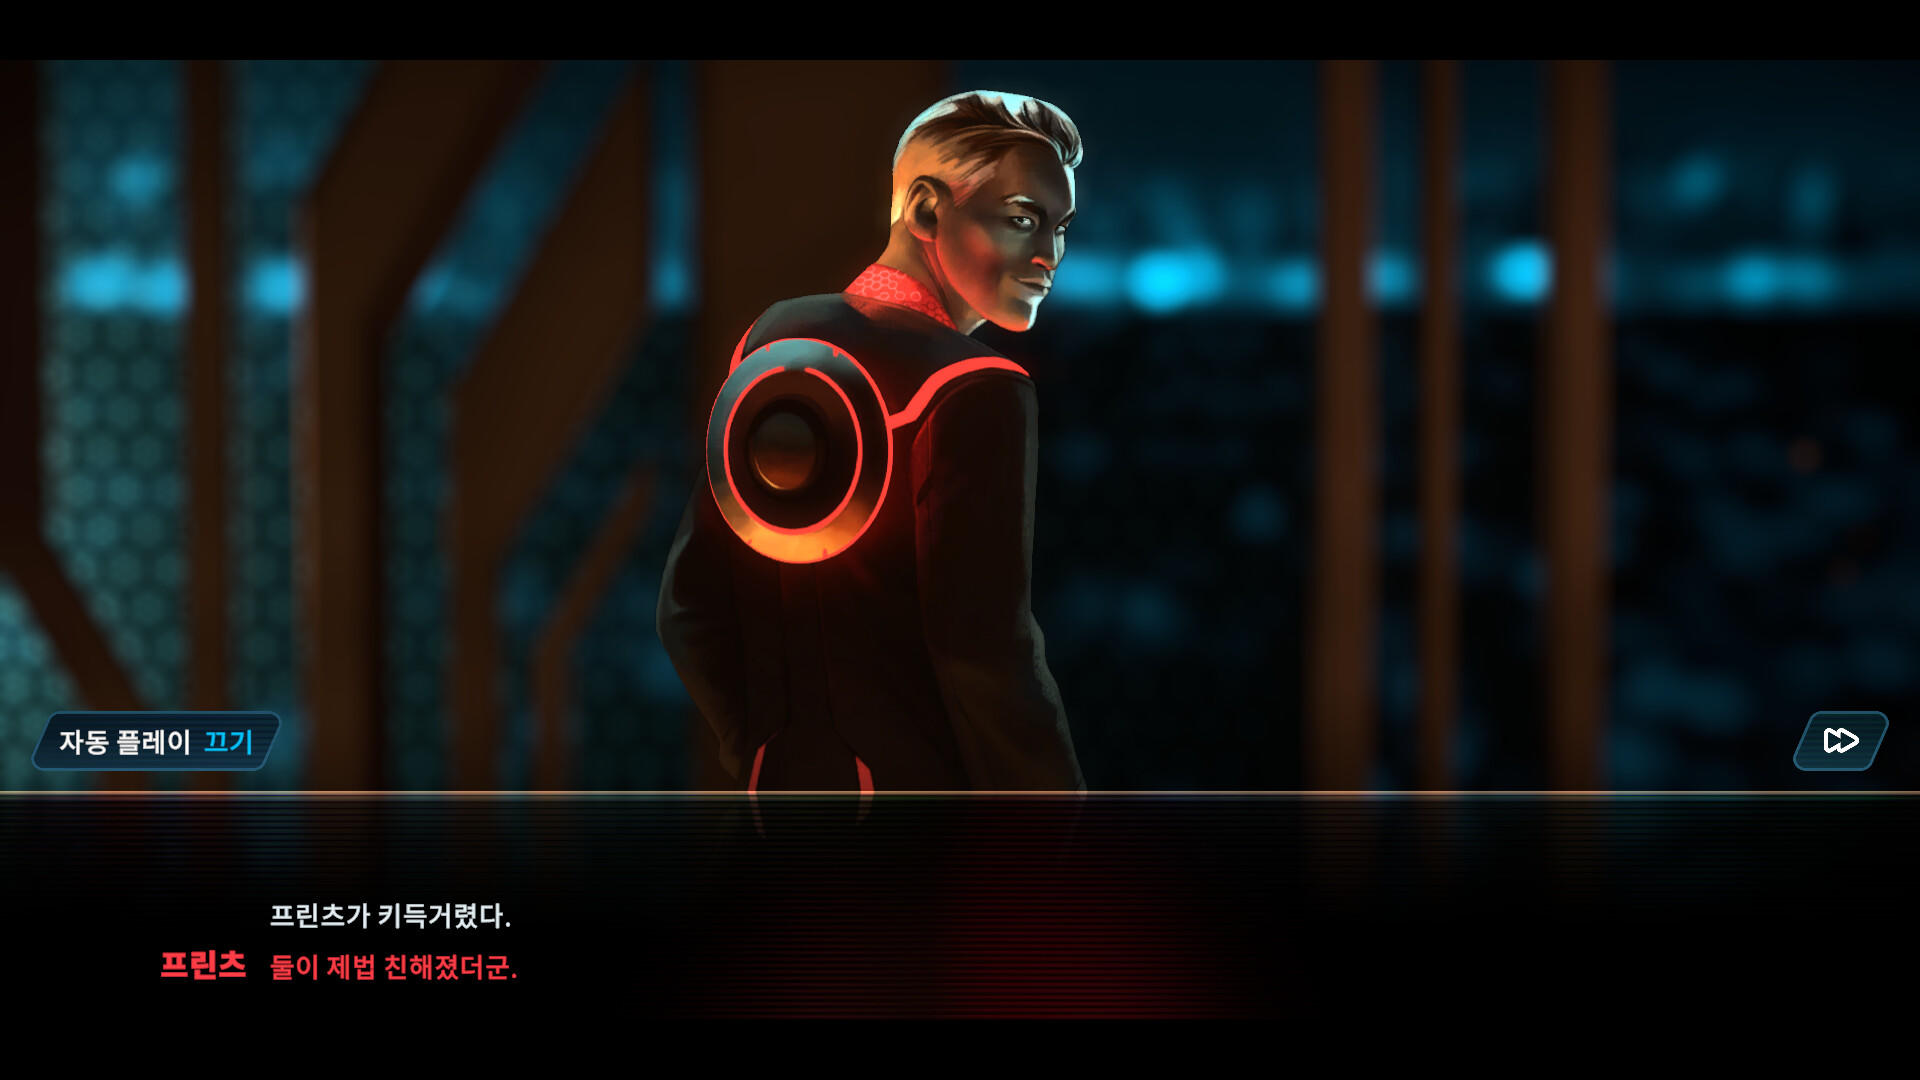 Tron: Identity 게임 스크린 샷